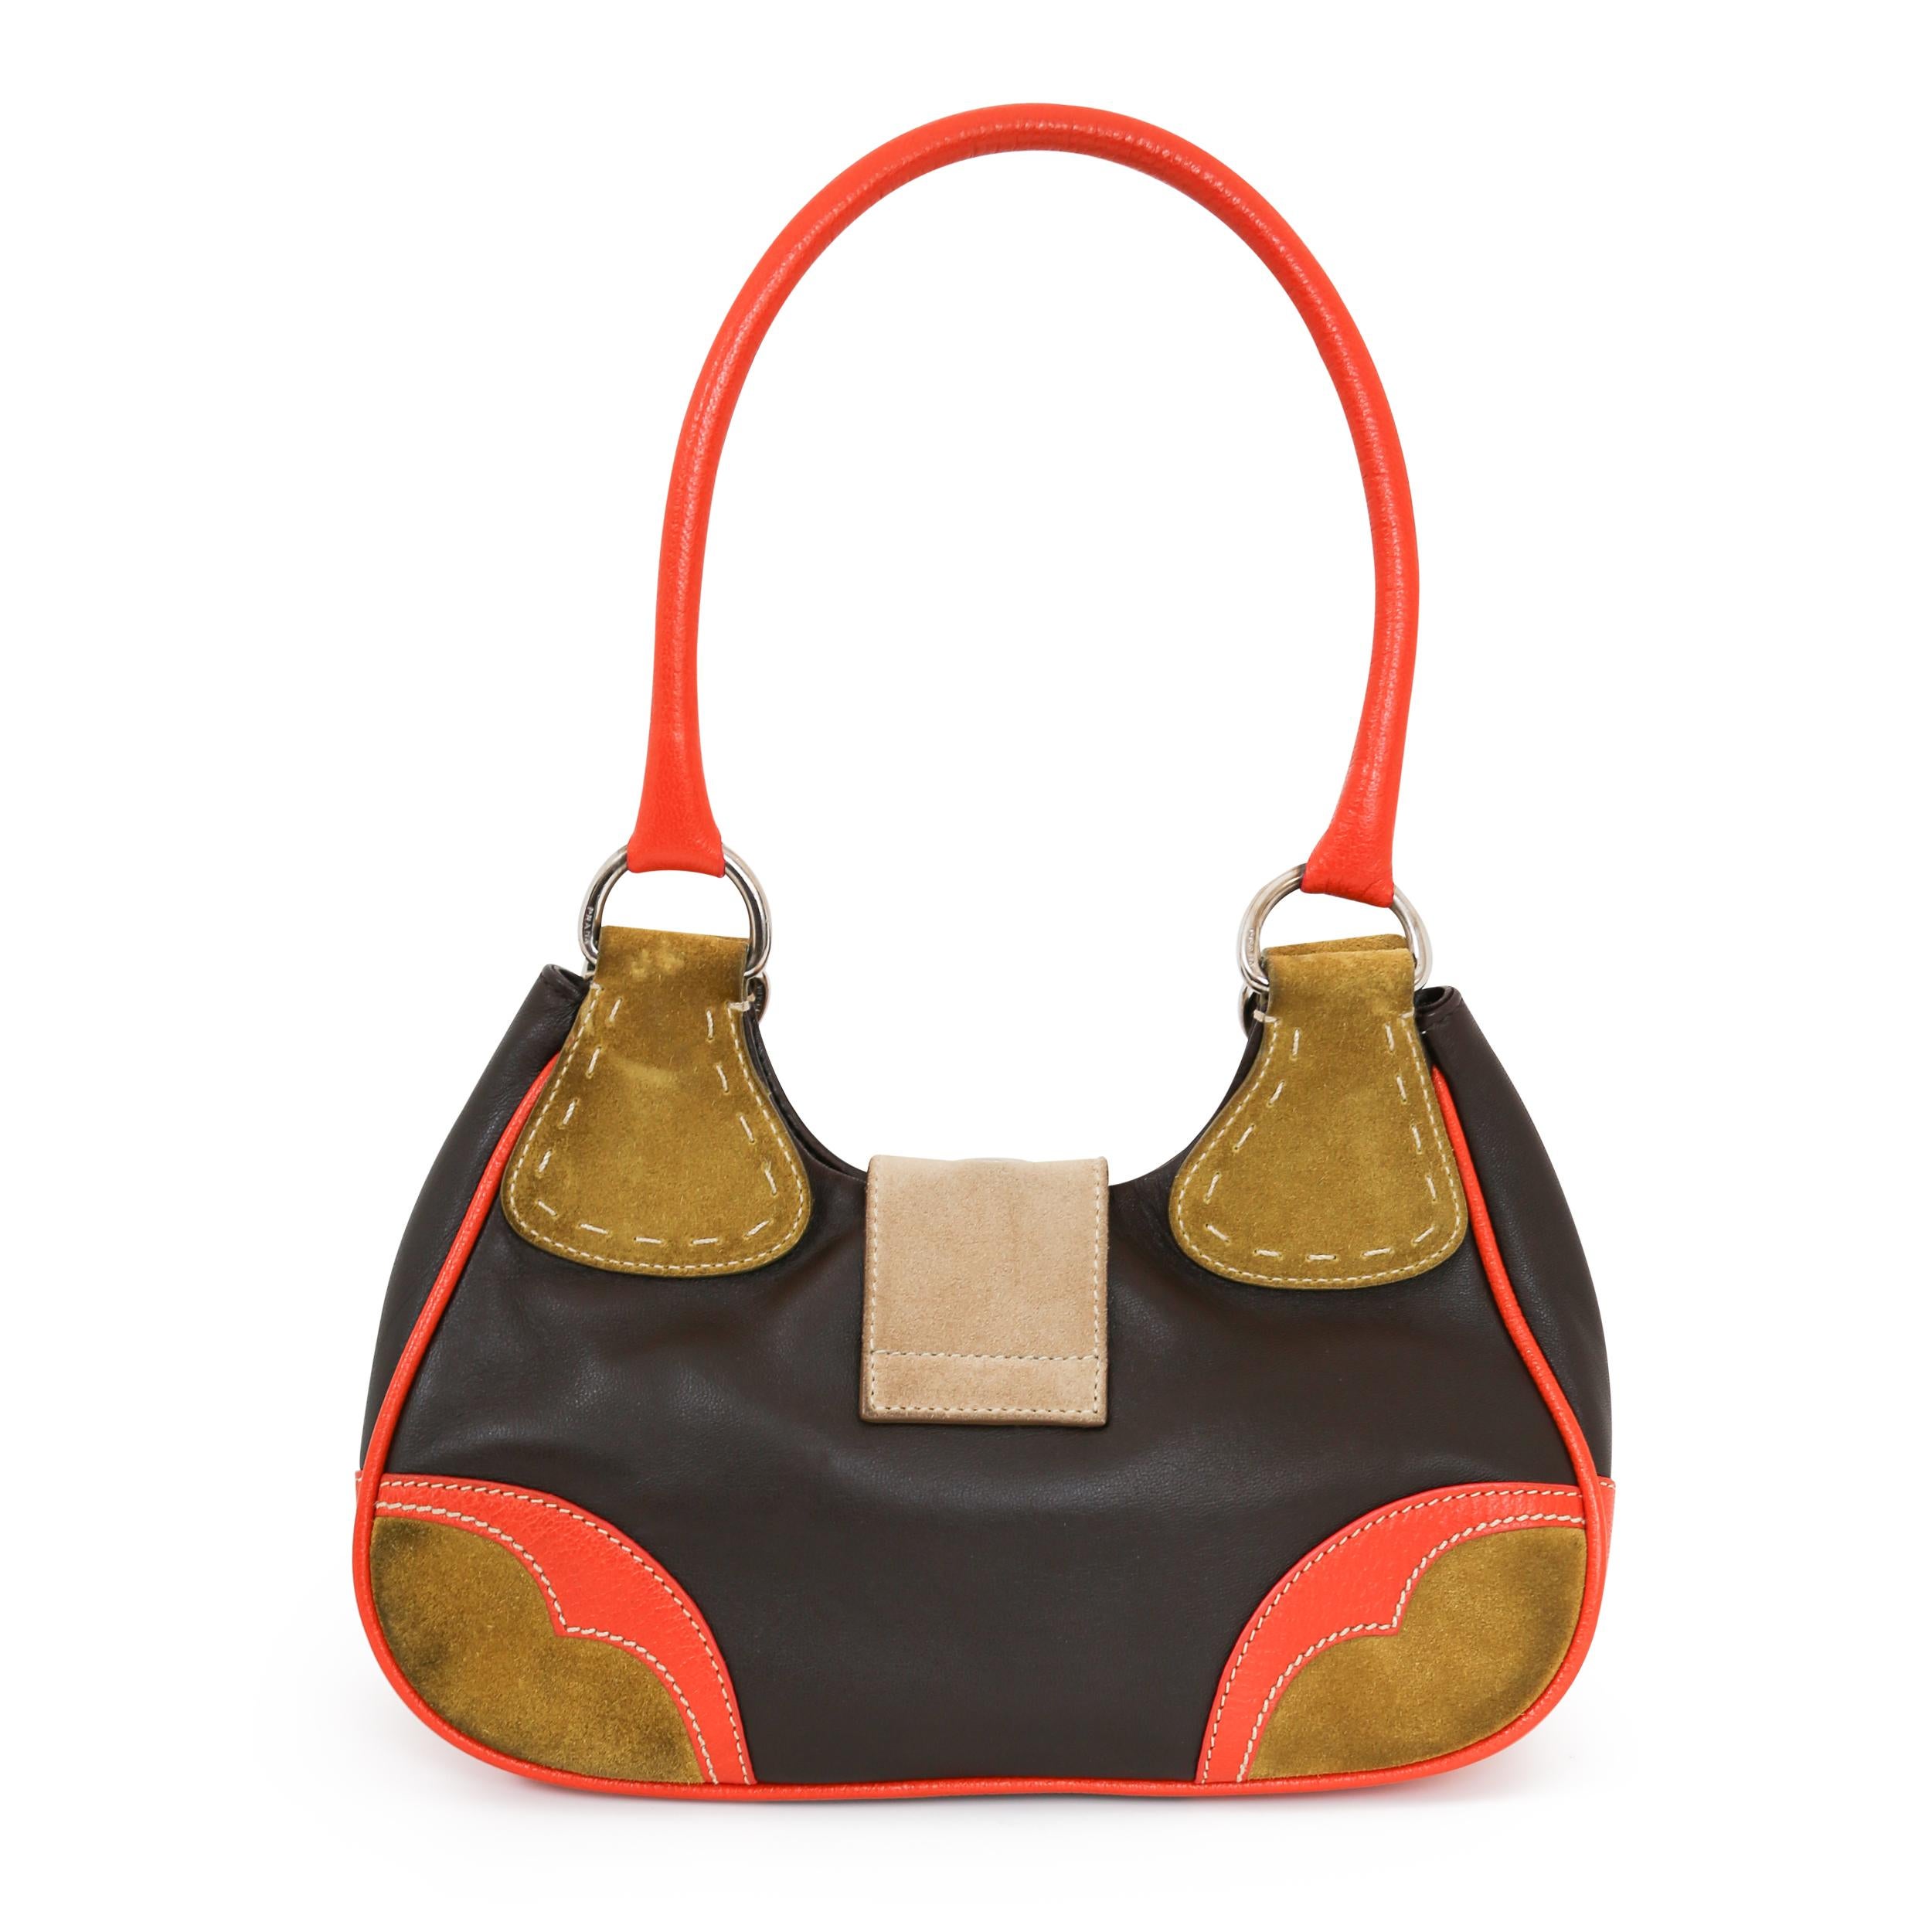 Die Moon Suede Handbag ist ein Vintage-Stück aus den 00er Jahren. Mit einer großen Magnetschnalle auf der Vorderseite ist diese Prada Tasche sowohl stilvoll als auch einfach zu bedienen. Die Innentasche mit Reißverschluss macht das ohnehin schon